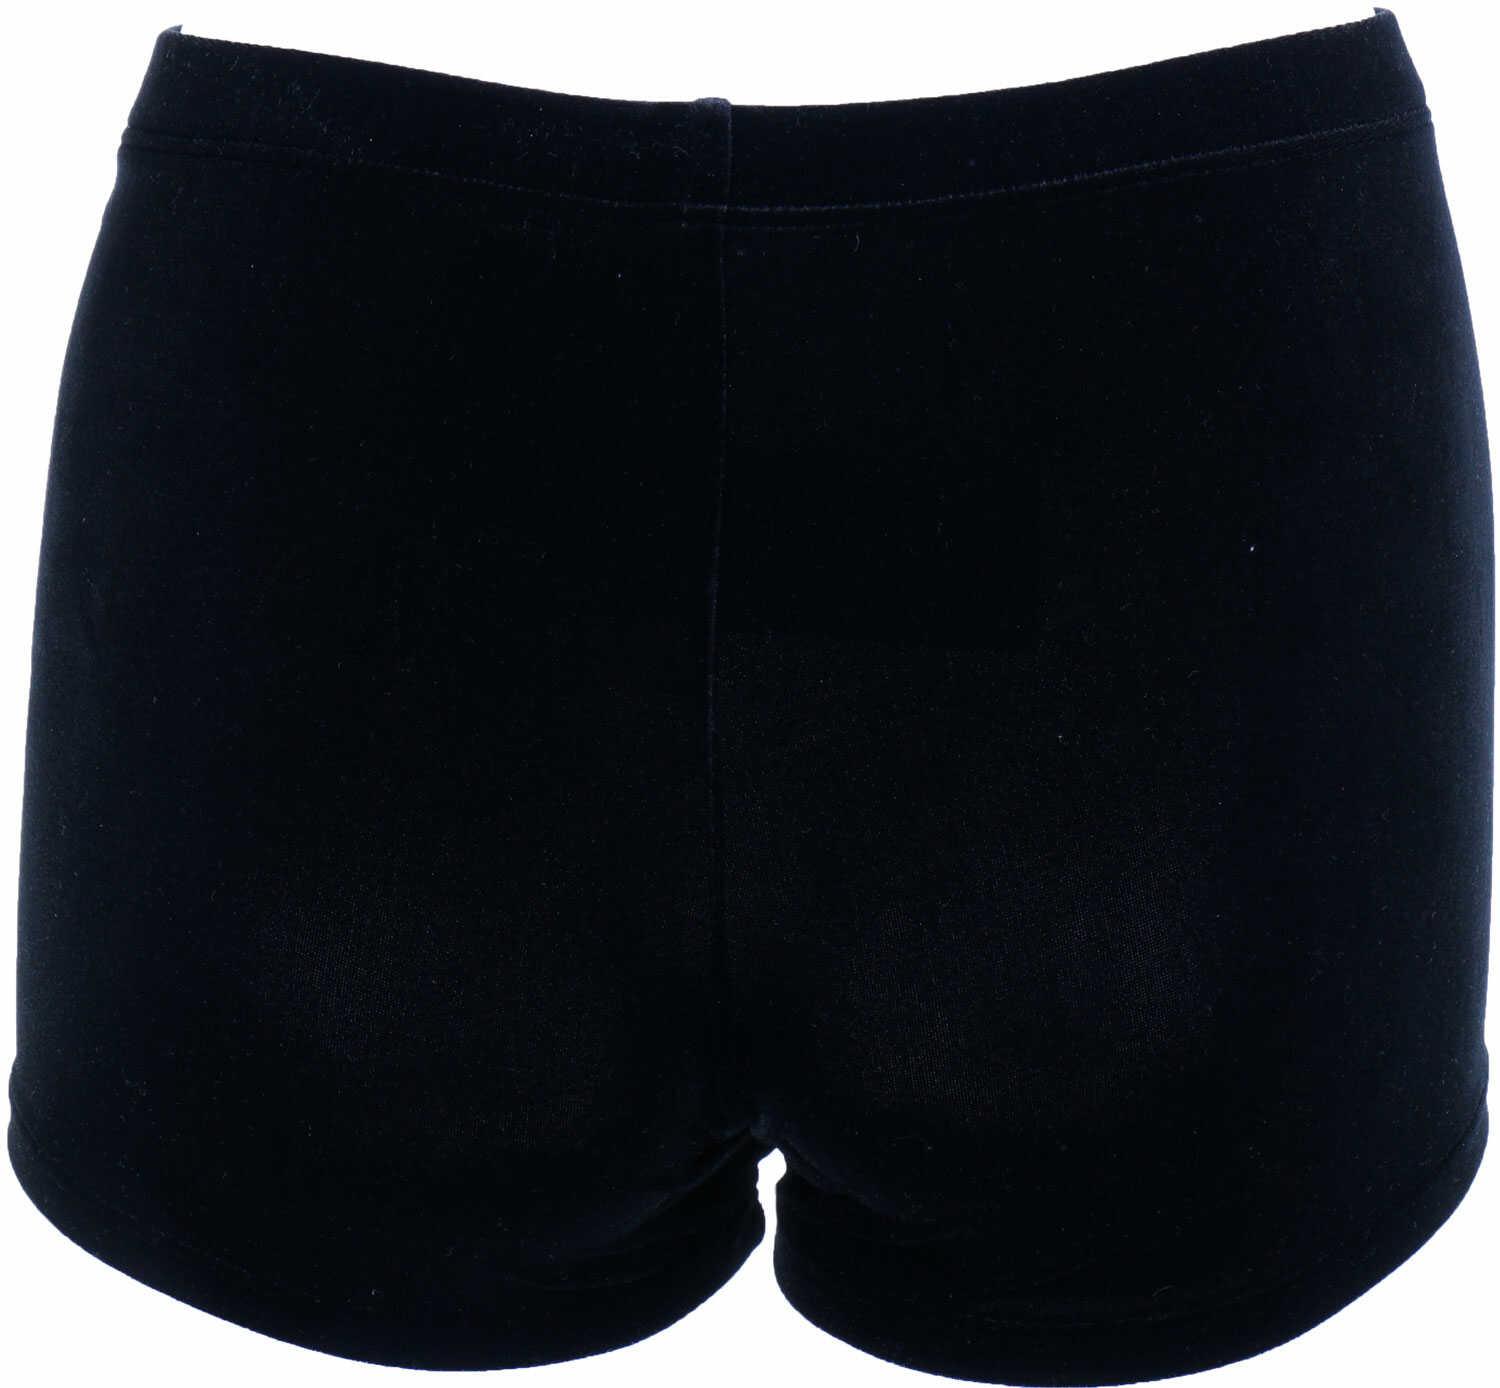 CEK Gymnastics shorts Black Velvet